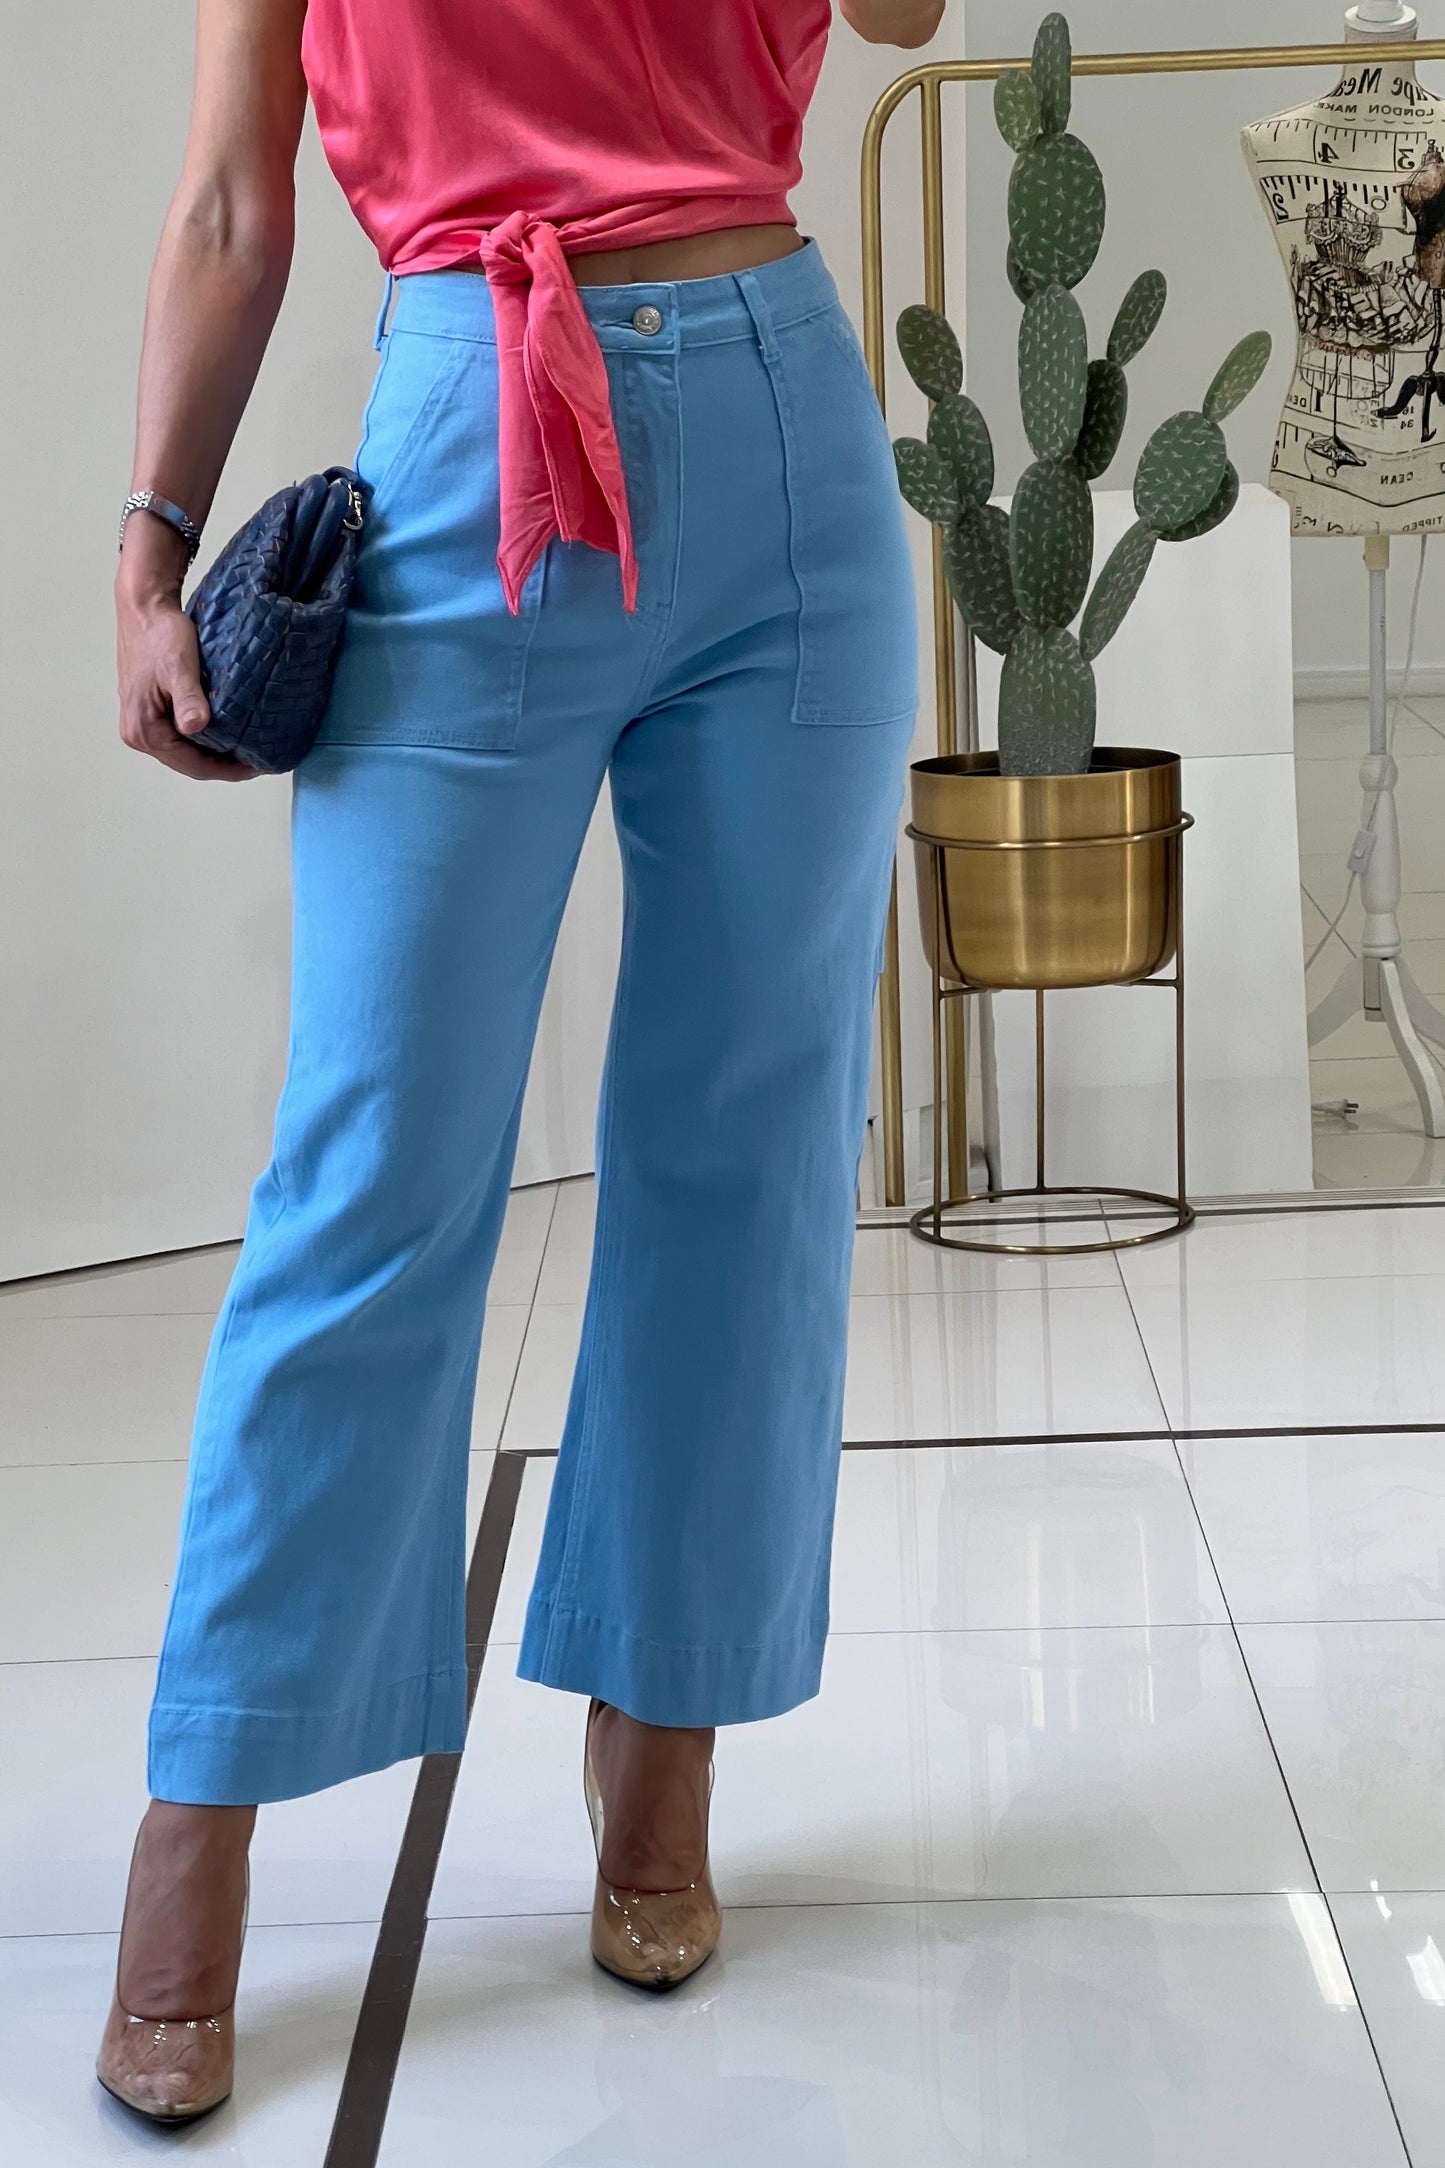 Jeans de pierna ancha - Blog Desde El Trópico, Moda y Belleza